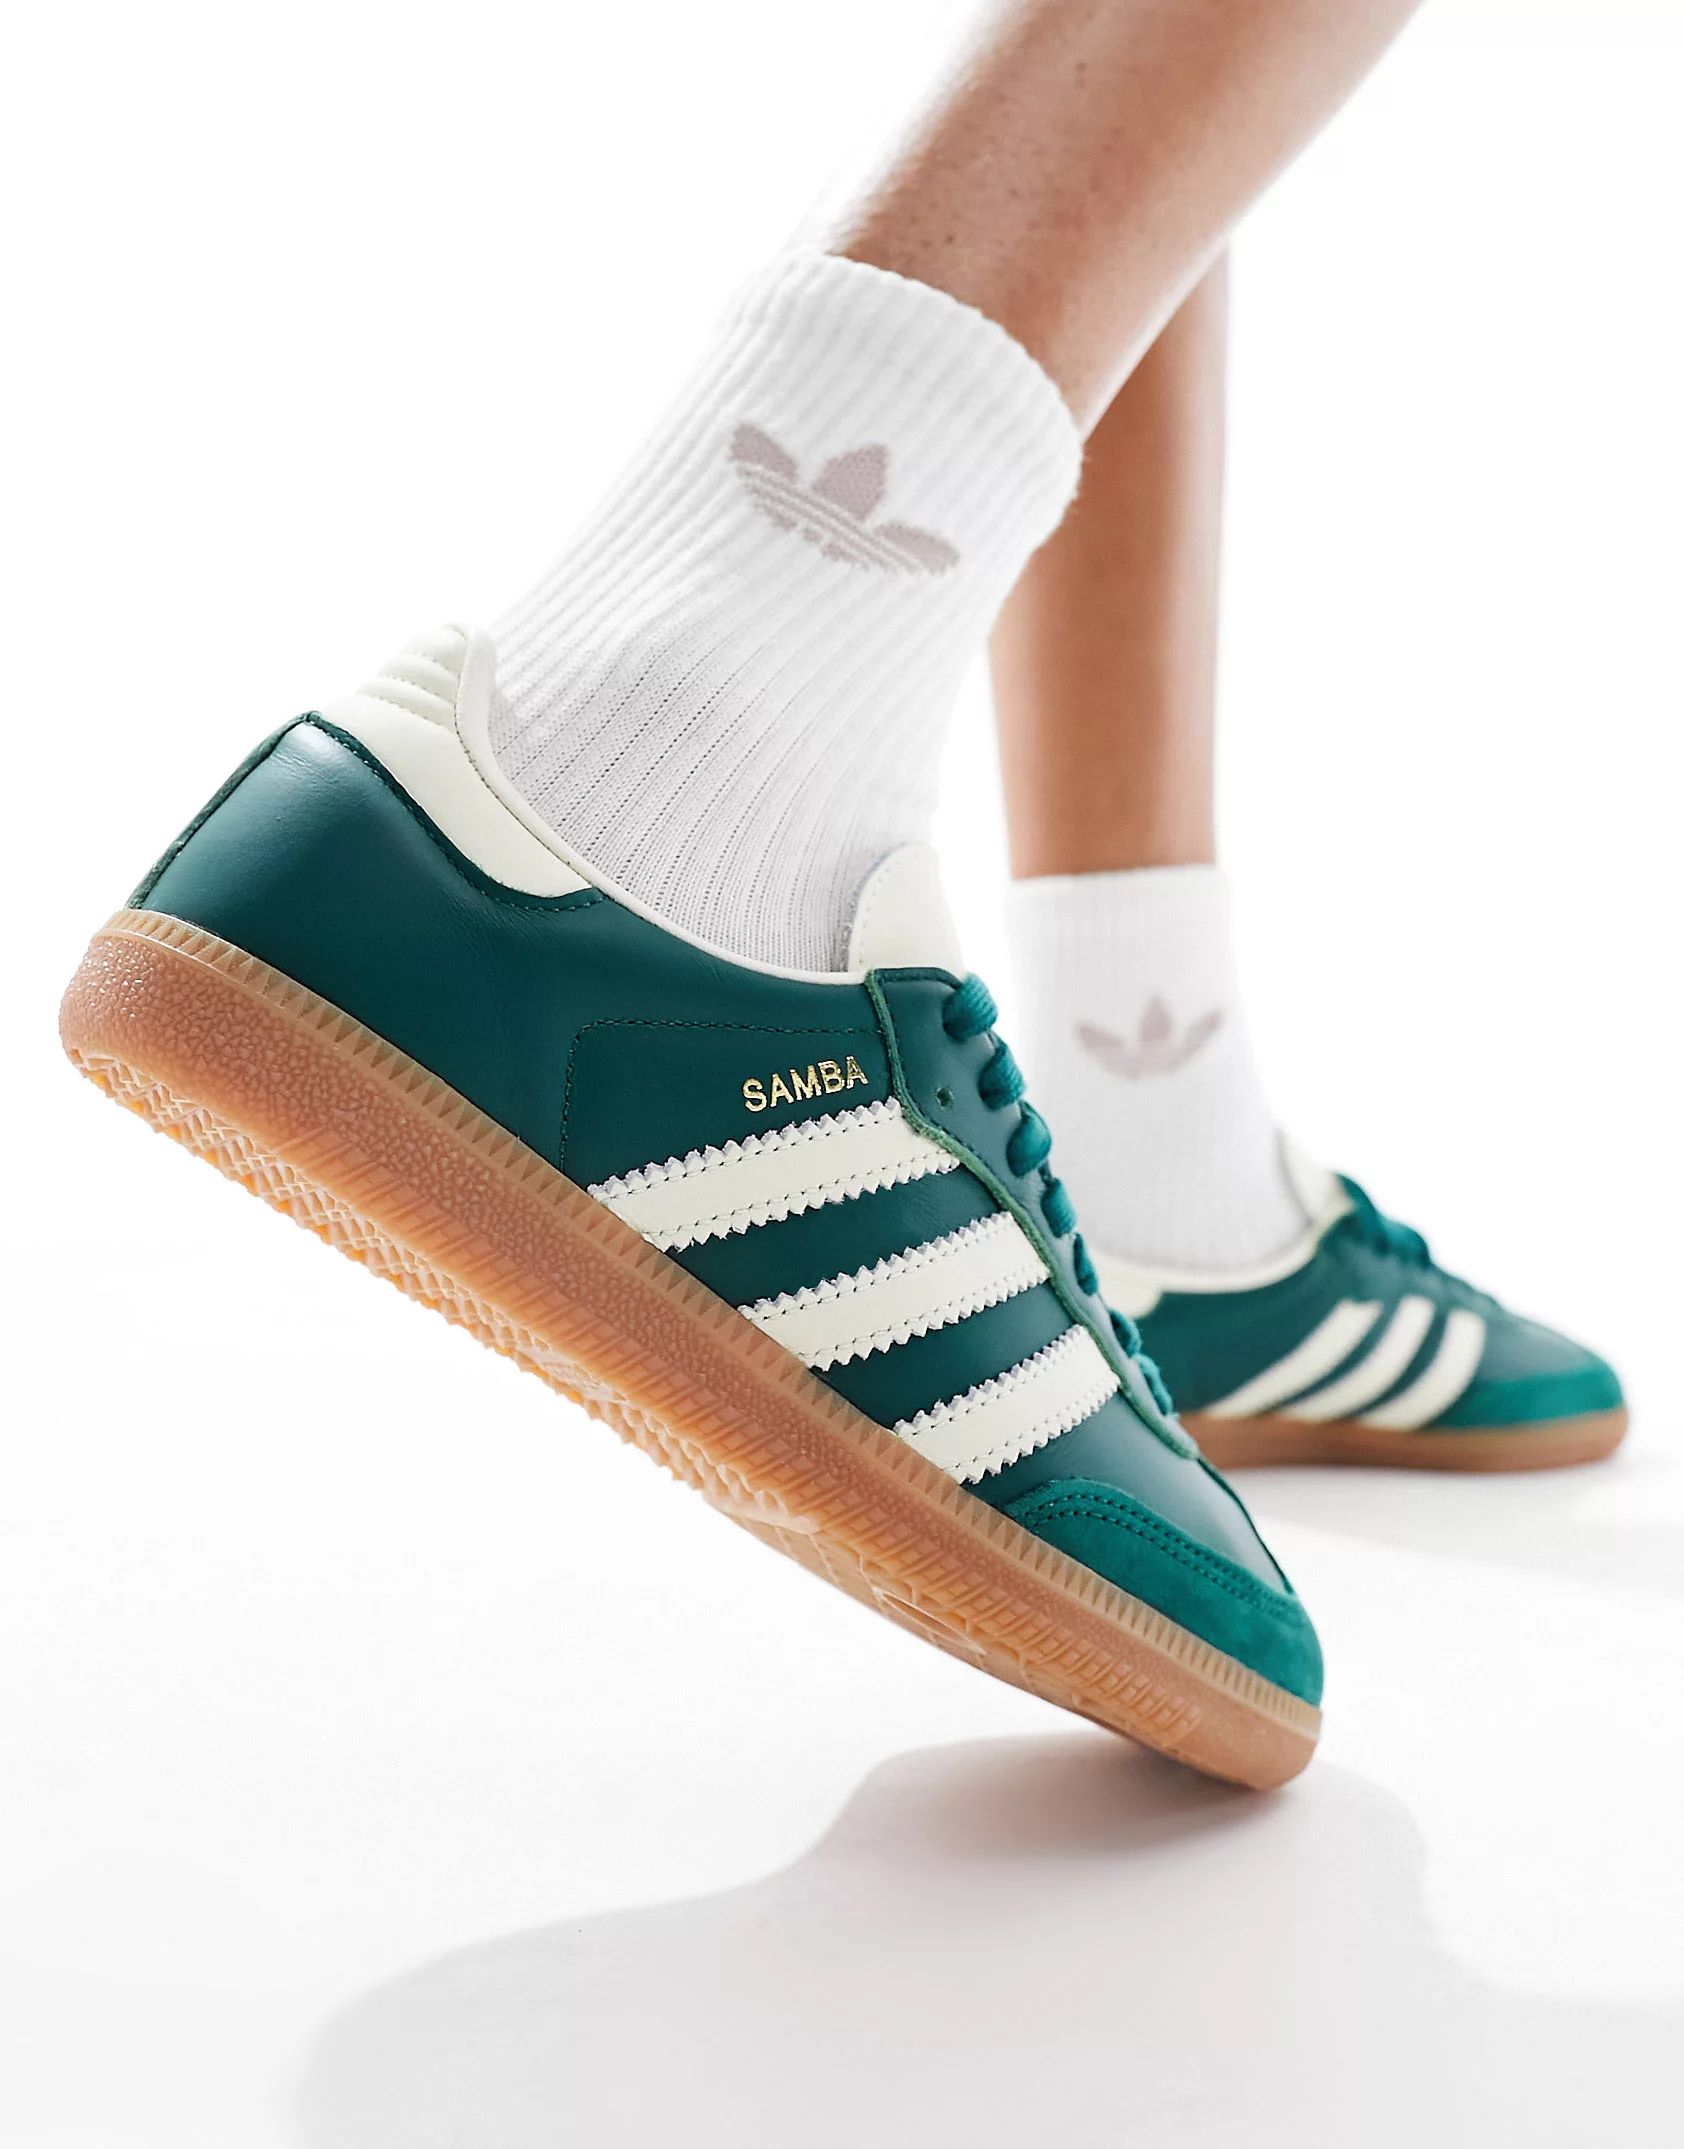 adidas Originals Samba OG sneakers in collegiate green and cream | ASOS | ASOS (Global)